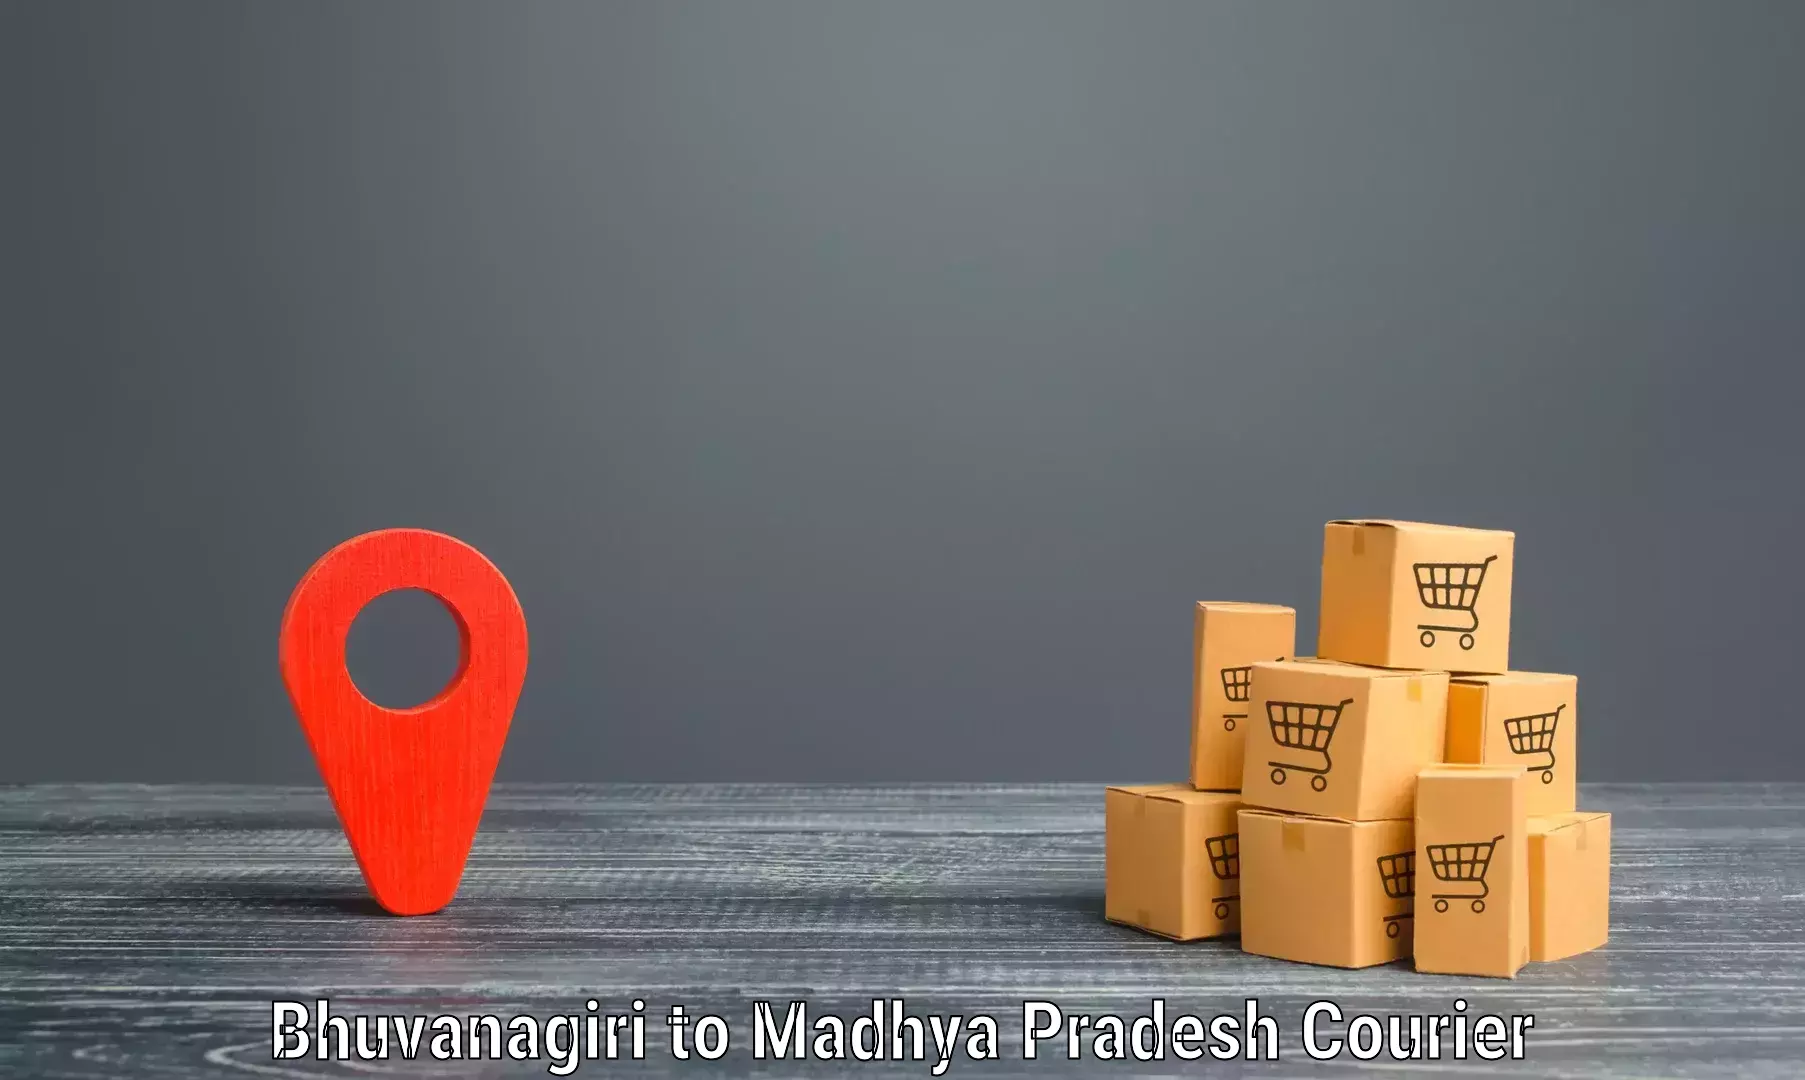 Door-to-door freight service Bhuvanagiri to Balaghat